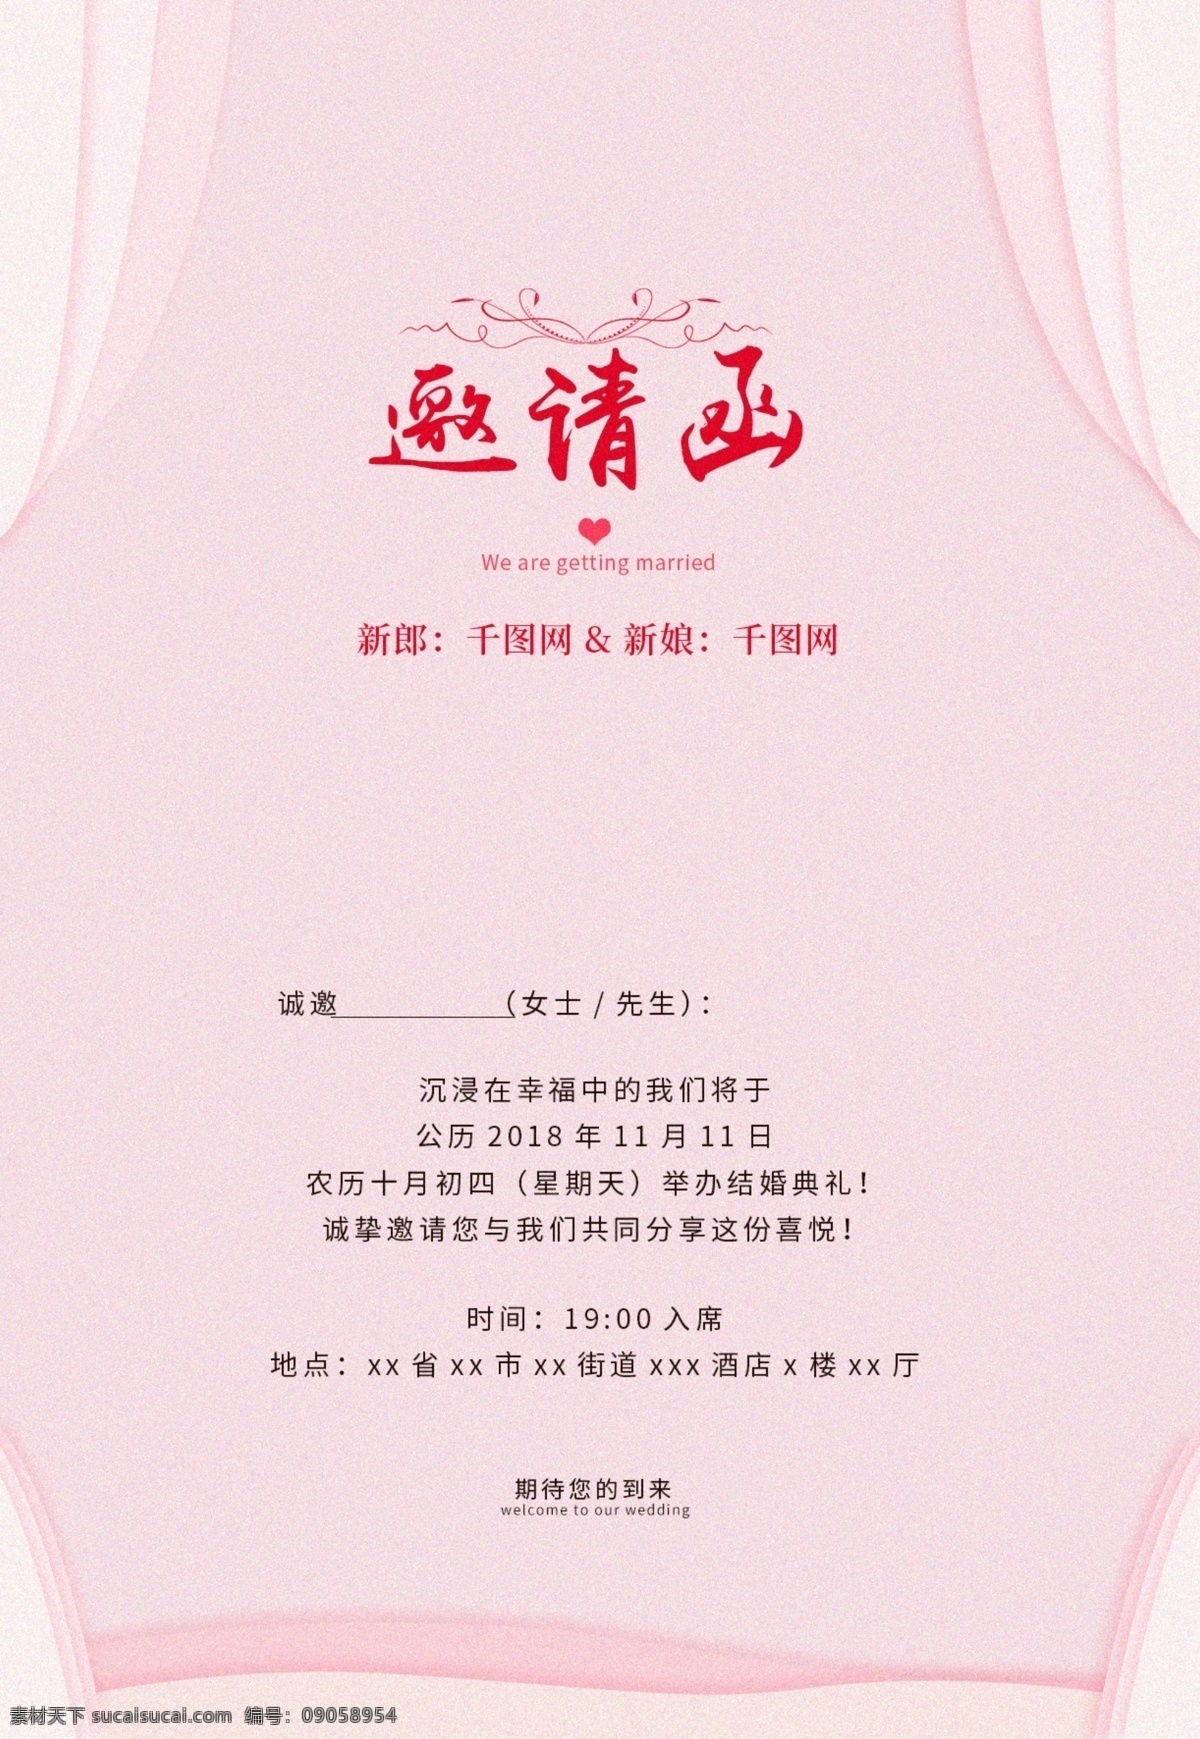 粉色 花朵 婚礼 贺卡 邀请函 粉红色 窗帘 我们结婚啦 婚礼邀请函 花